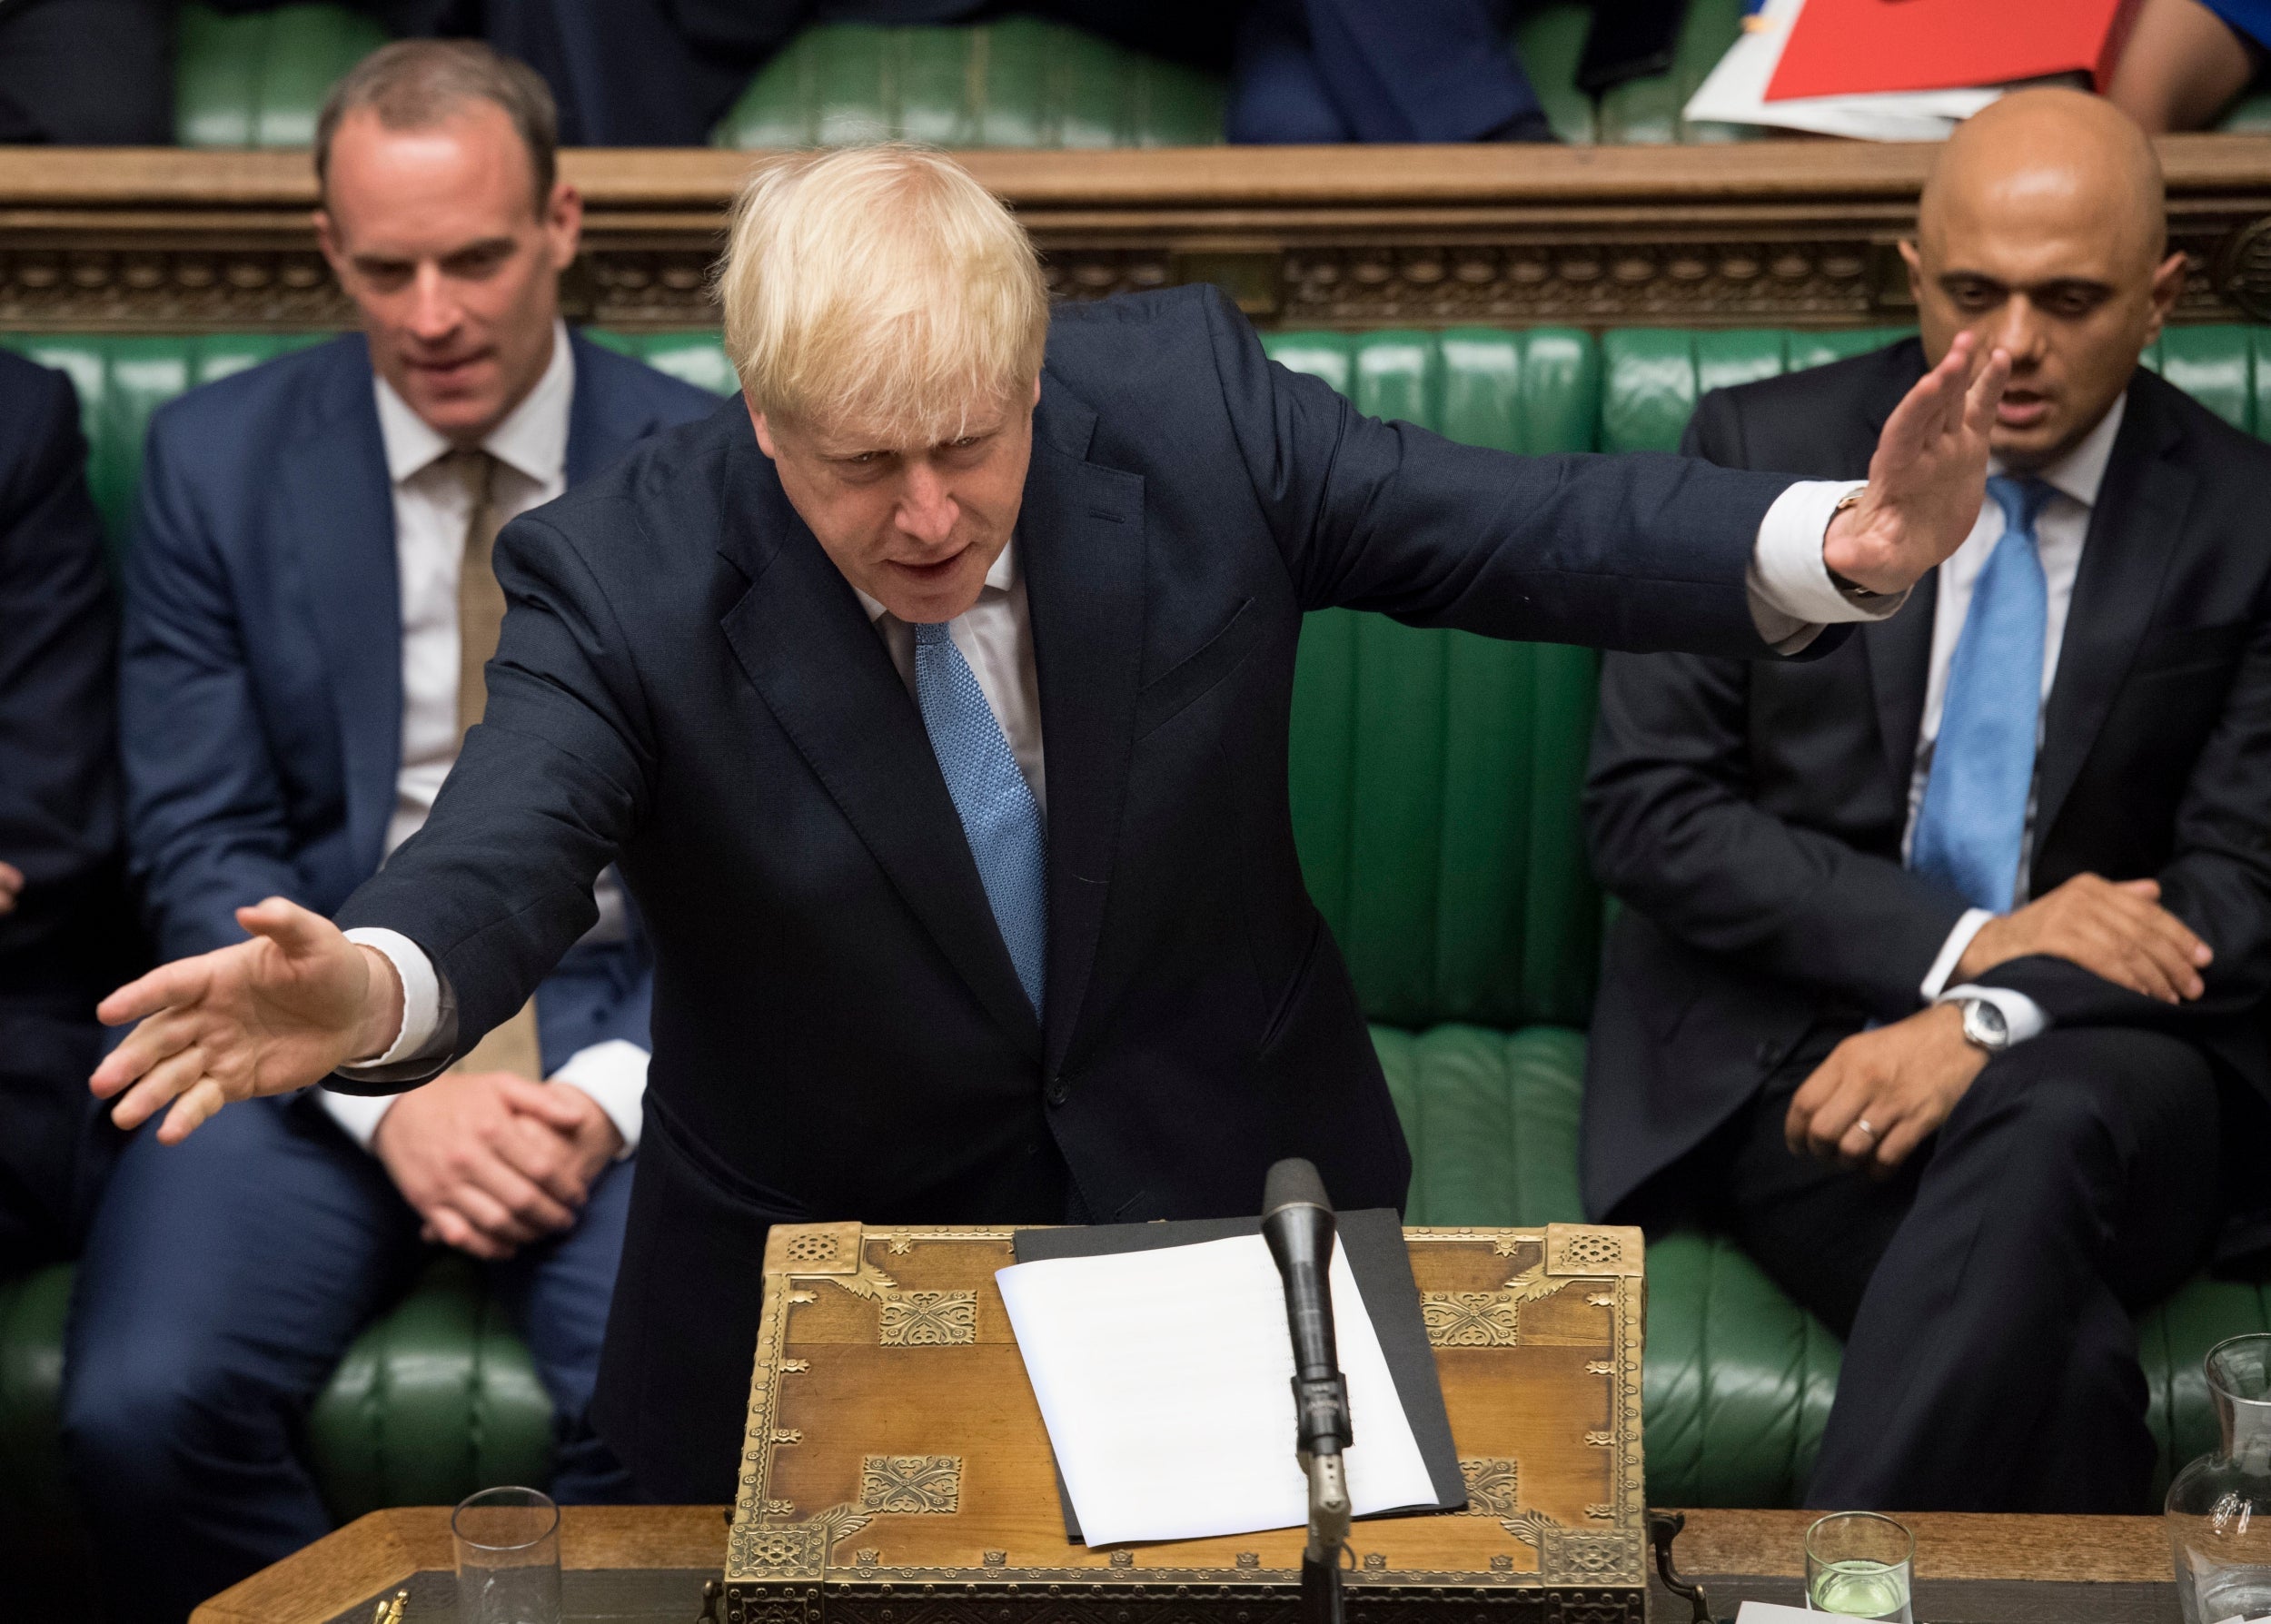 Boris Johnson gestures as he speaks in Parliament